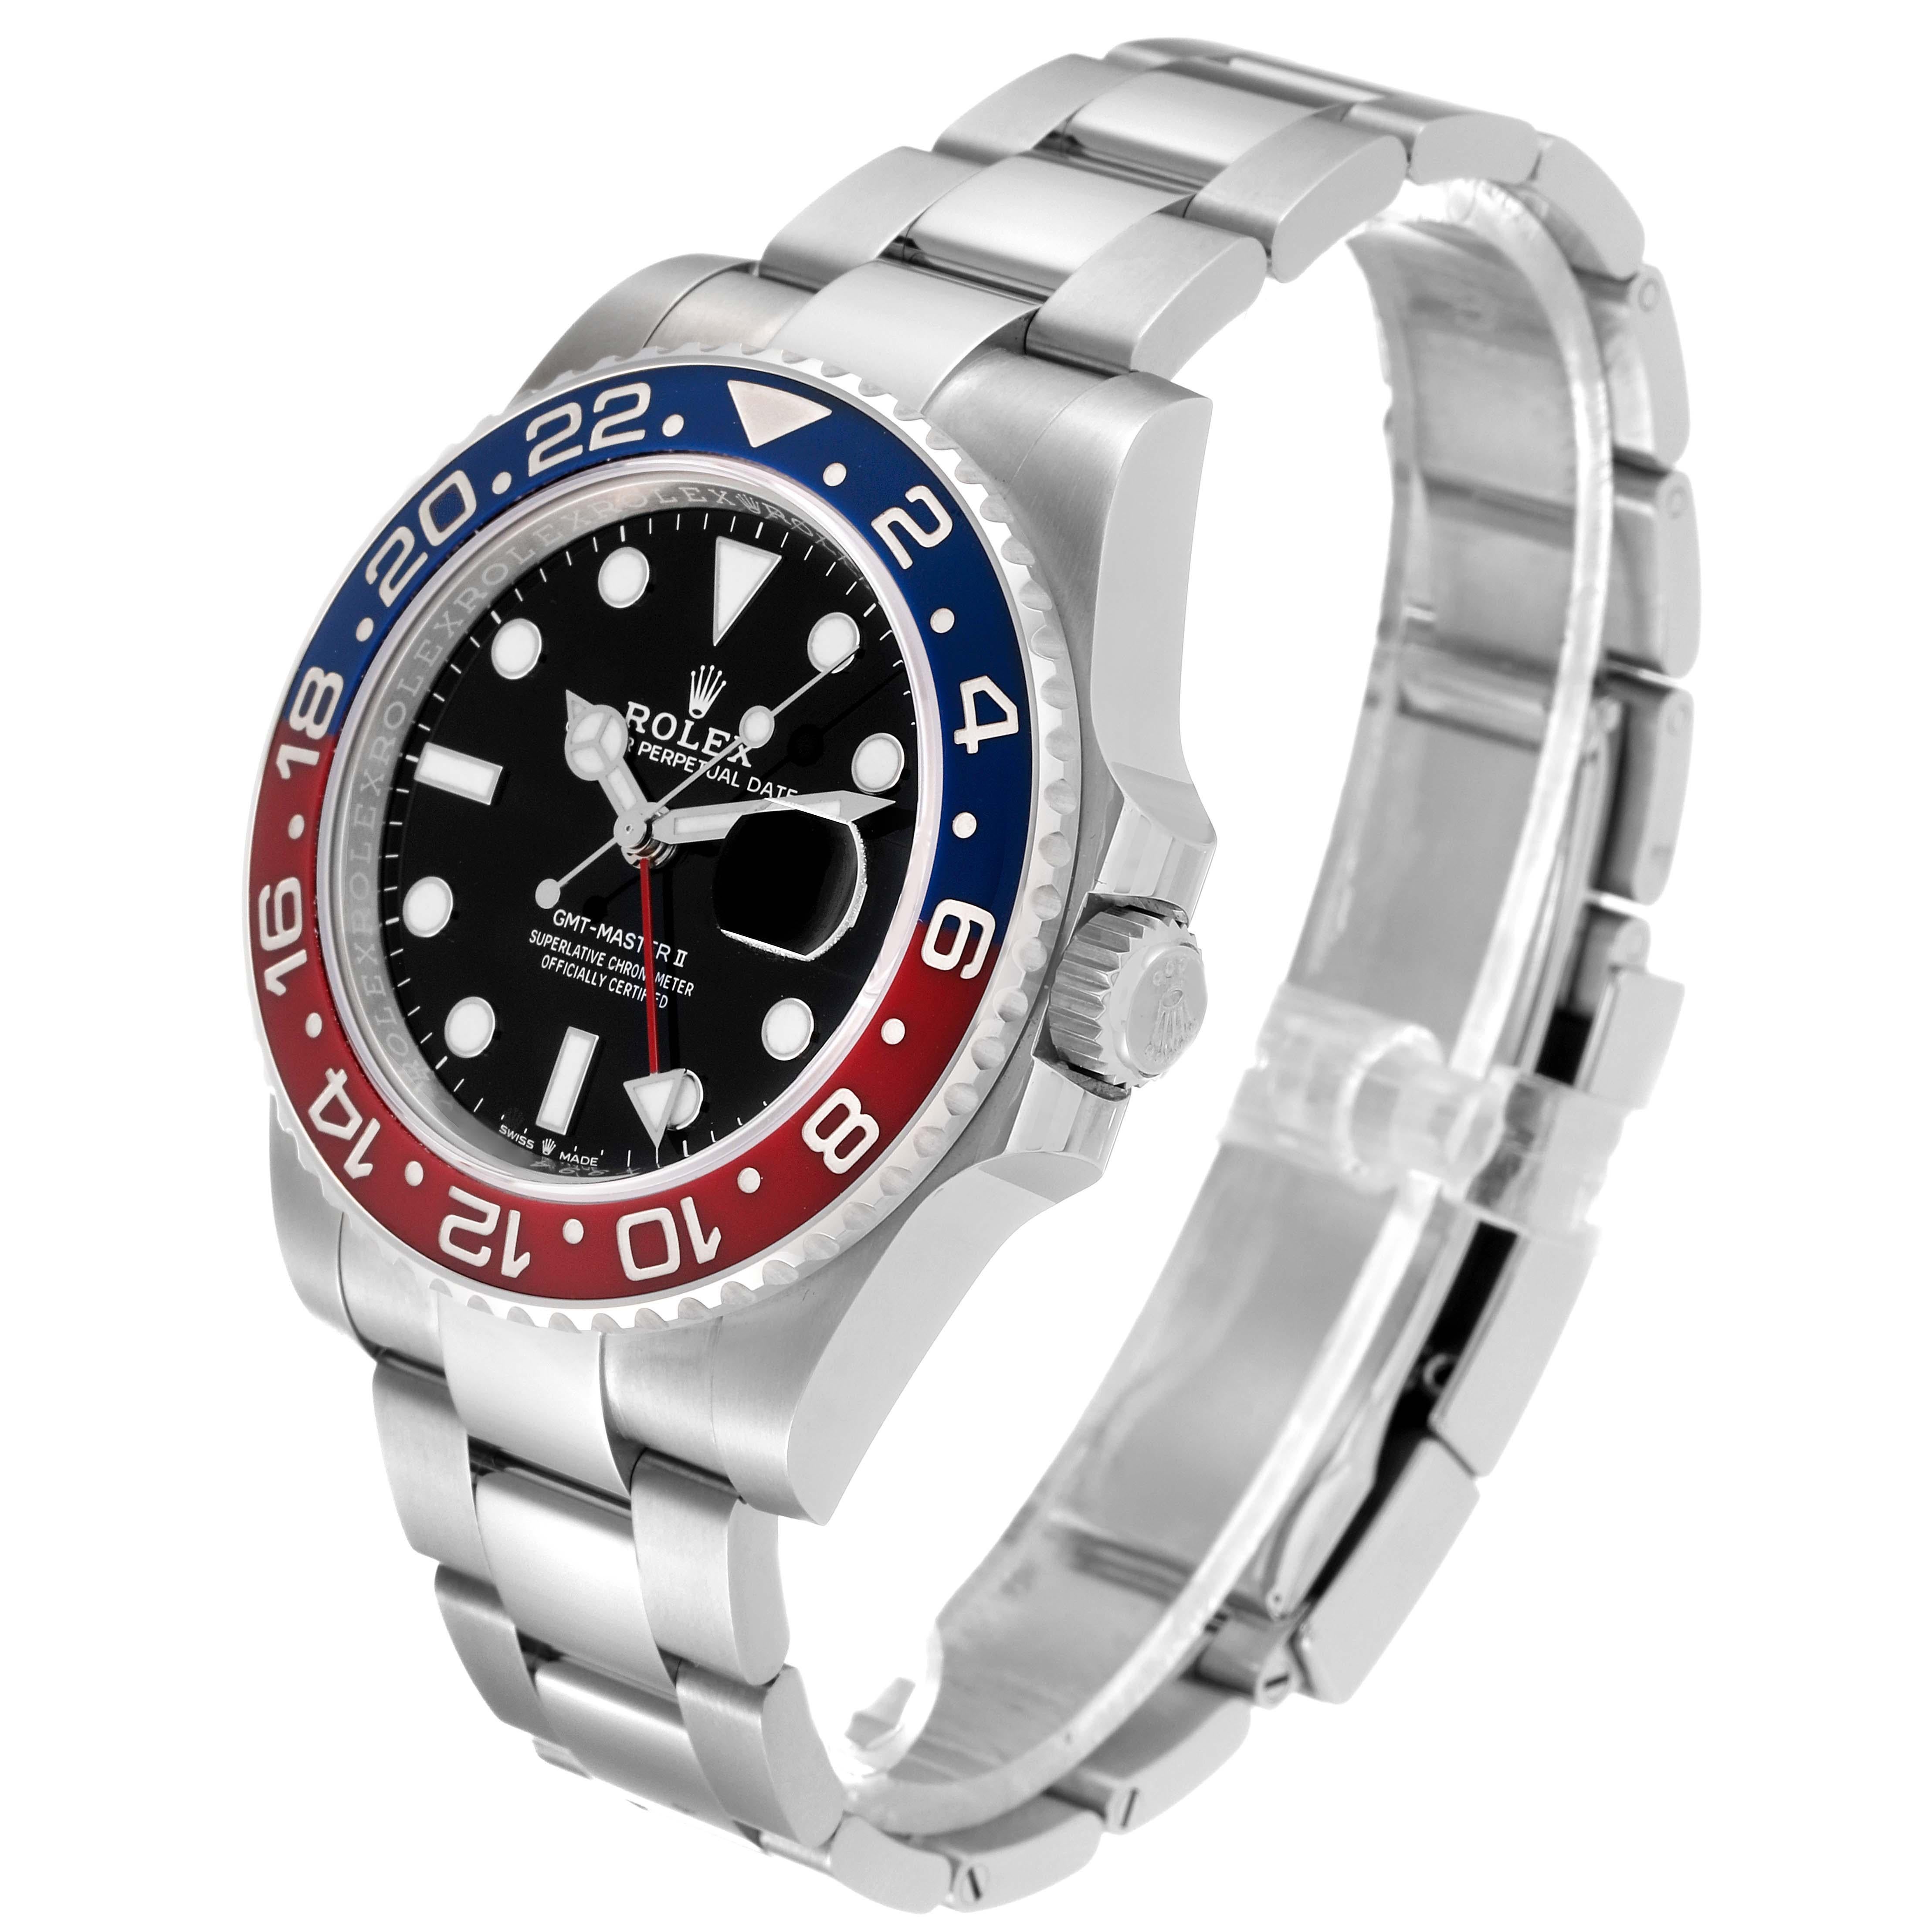 Rolex GMT Master II Blue Red Pepsi Bezel Steel Mens Watch 126710 Unworn. Mouvement automatique à remontage automatique, officiellement certifié chronomètre. Boîtier en acier inoxydable de 40 mm de diamètre. Logo Rolex sur la couronne. Lunette